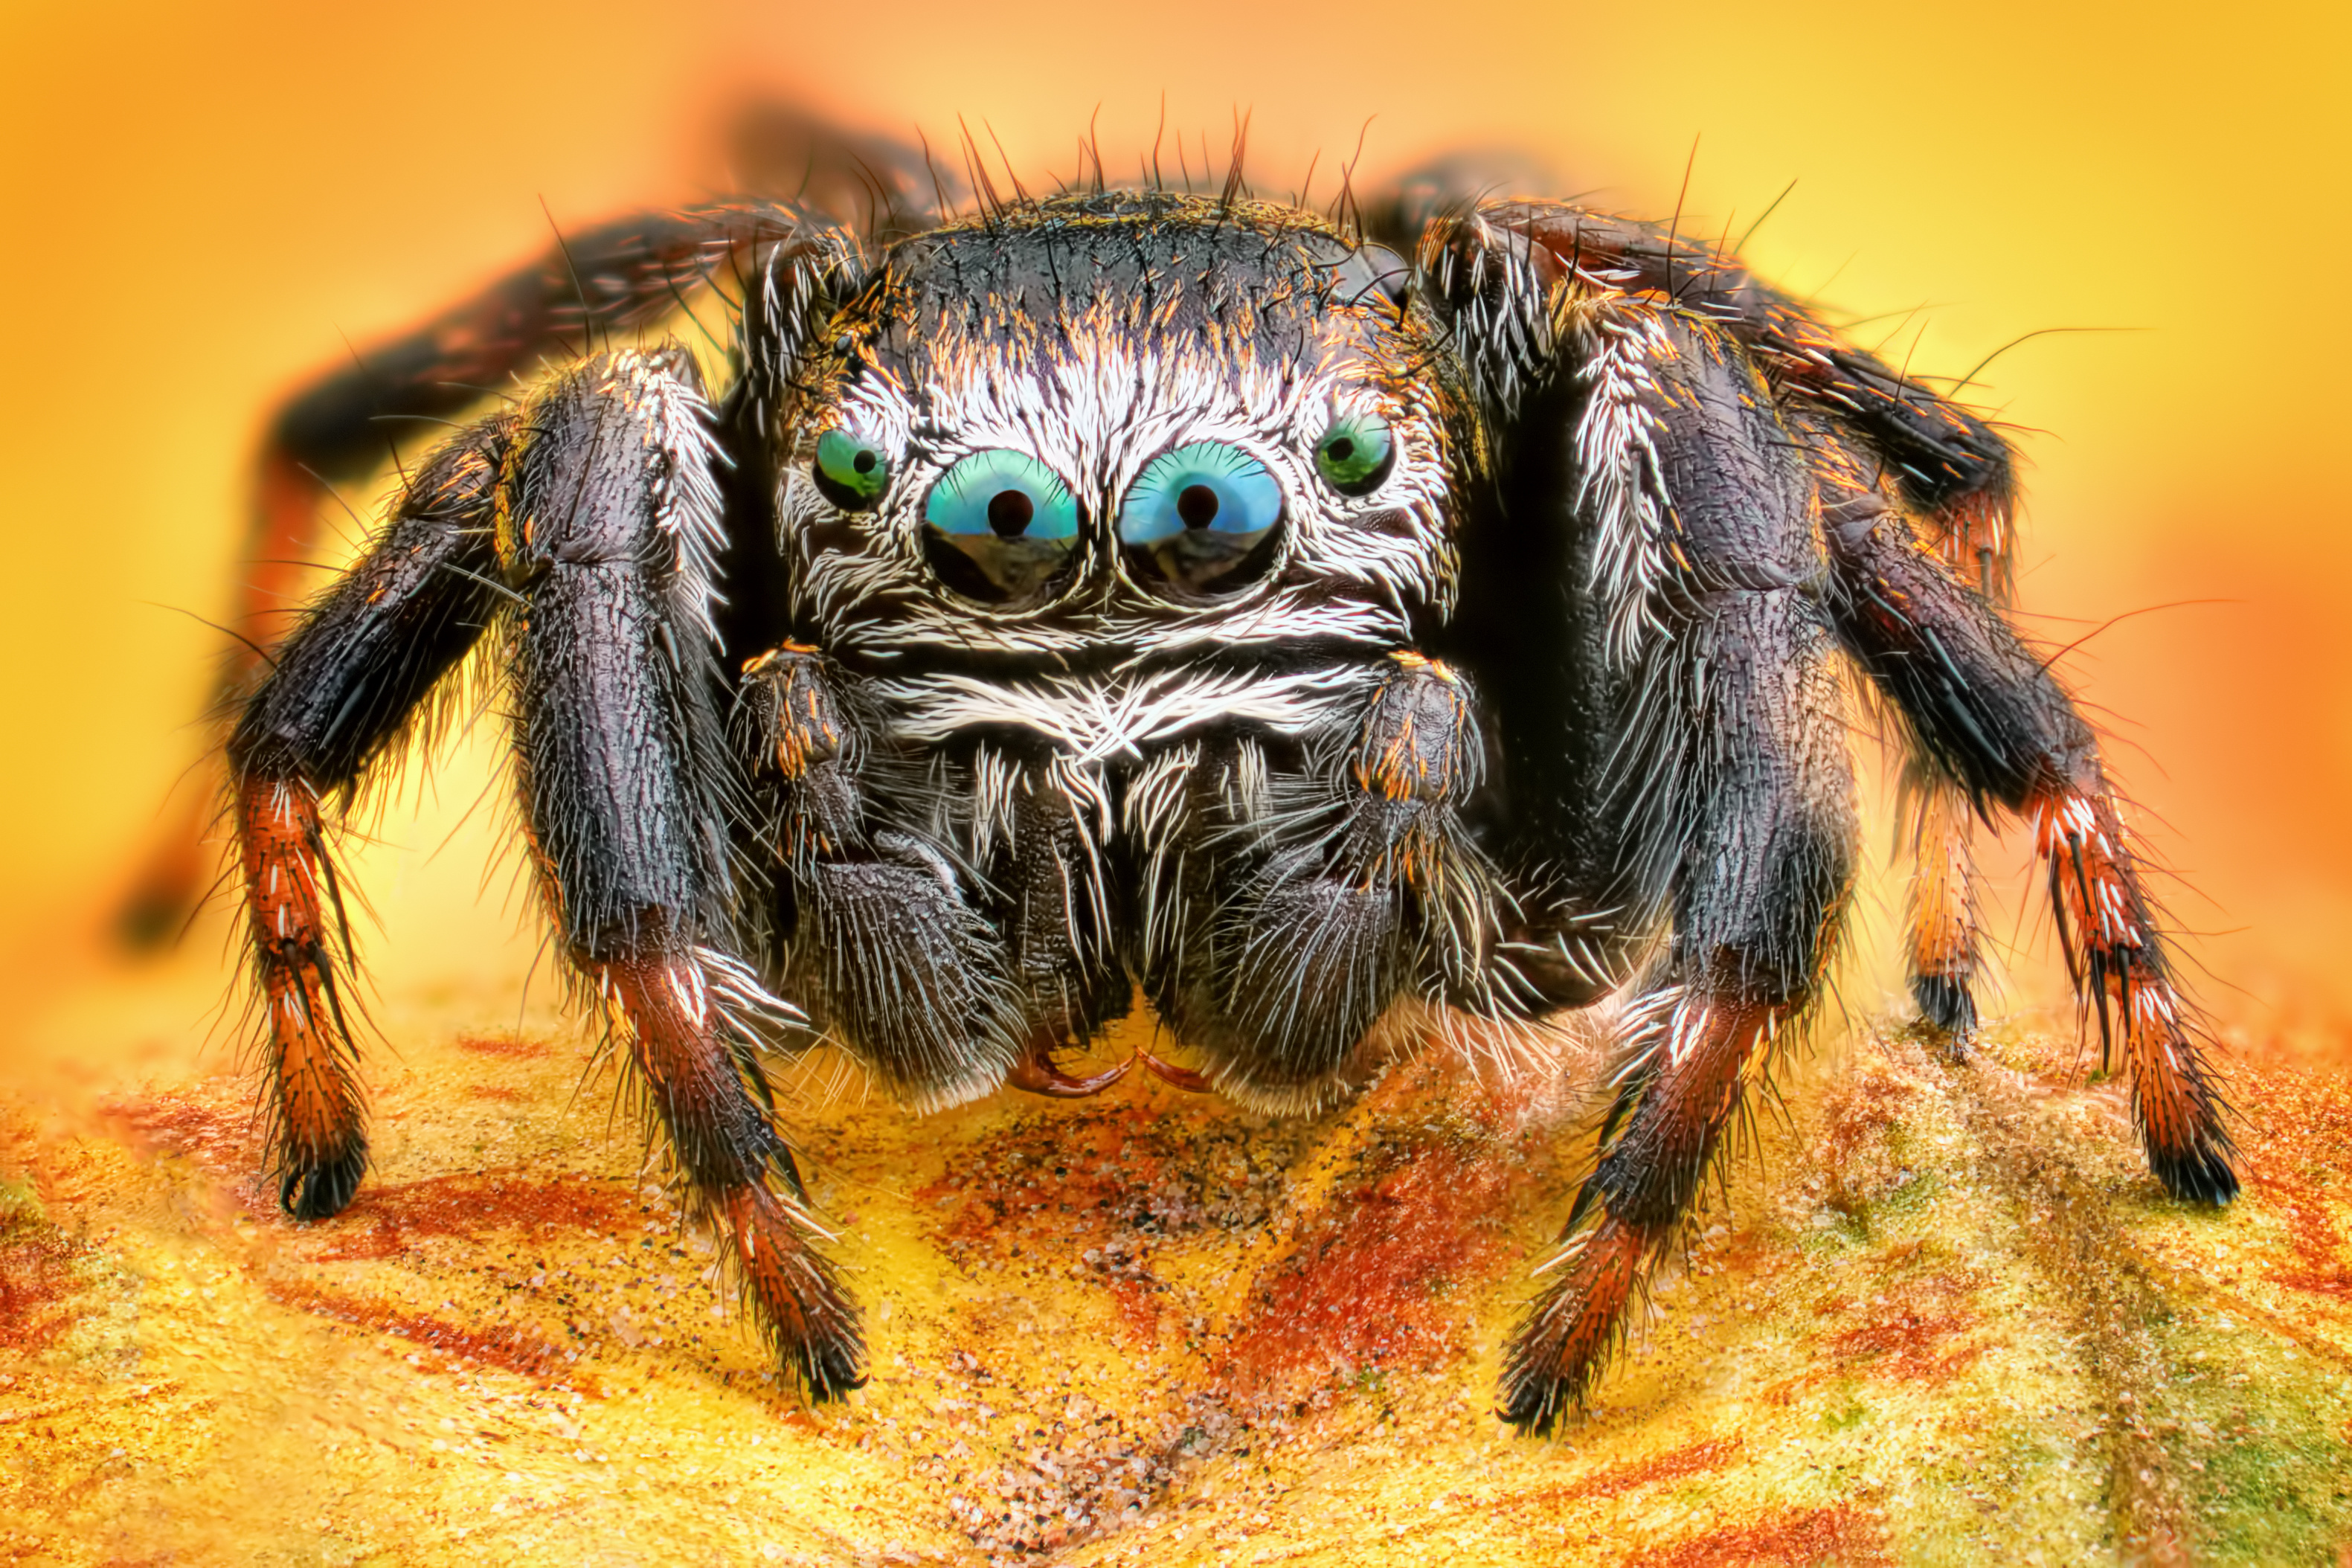 Les araignées pourraient devenir plus agressives lorsqu'elles vivent dans des zones touchées par les ouragans. © Sebastian, Adobe Stock